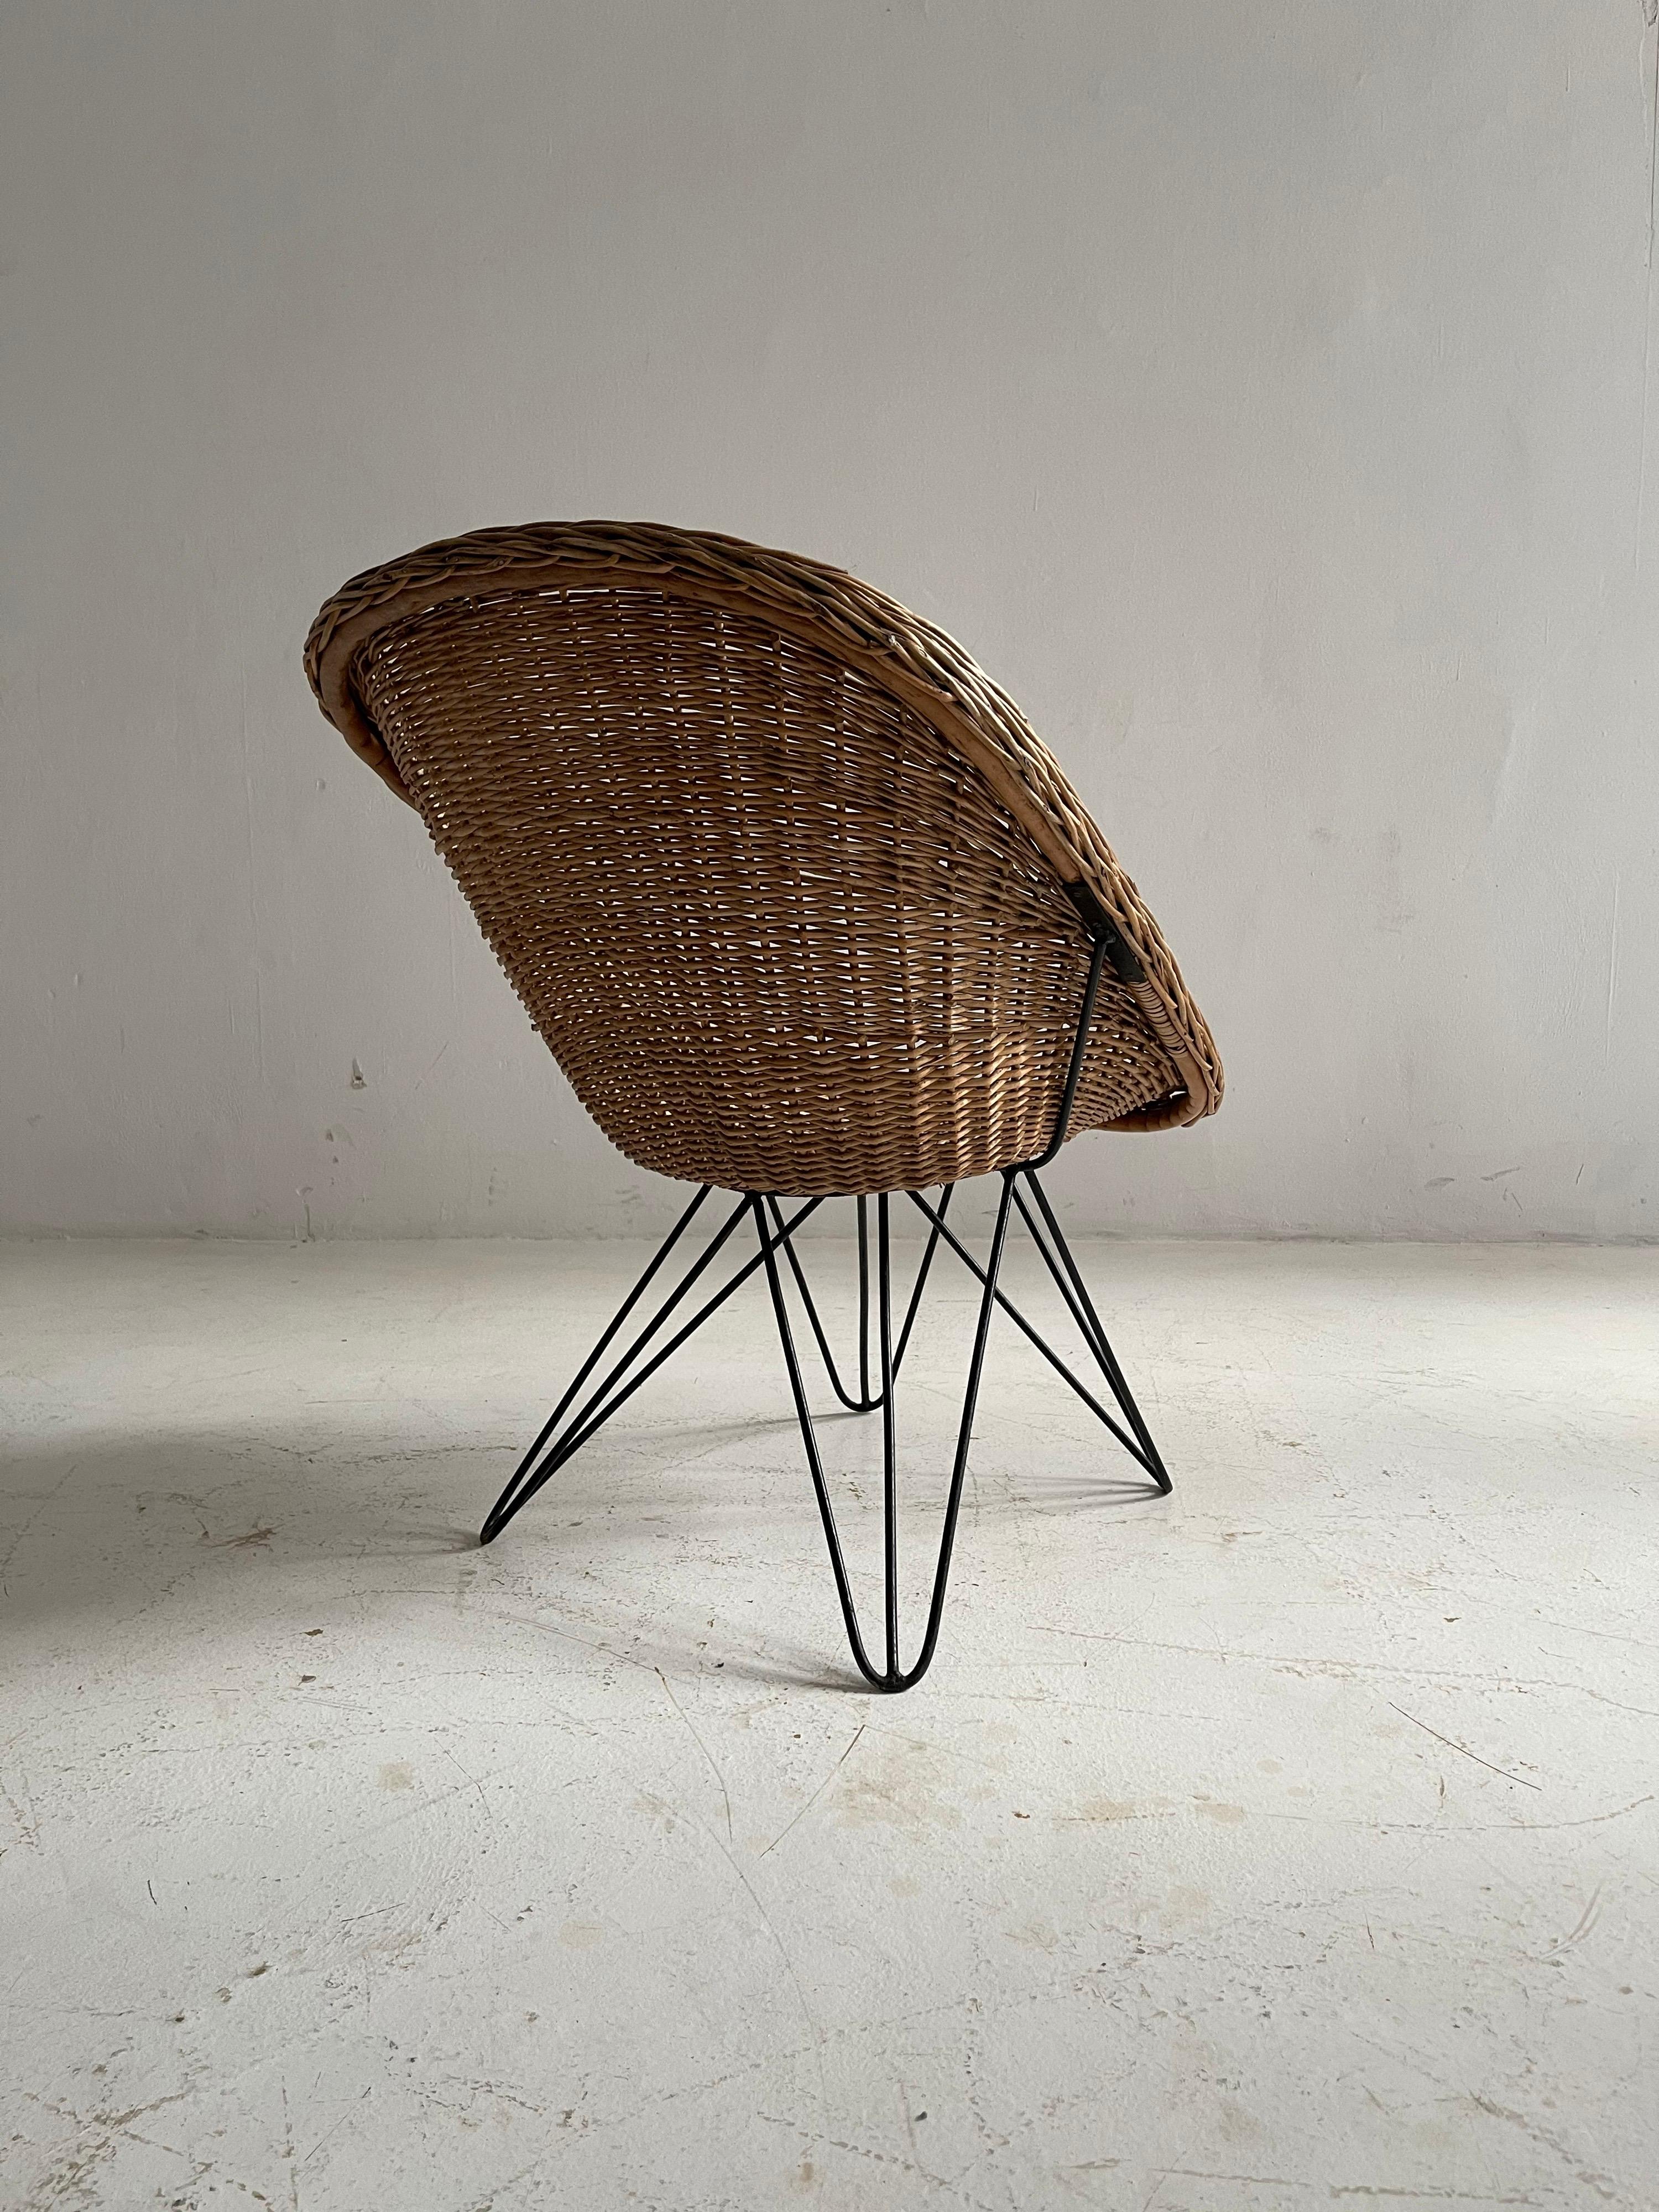 Barrel Wicker Lounge Chairs by Sonett, Austria, 1950s For Sale 5